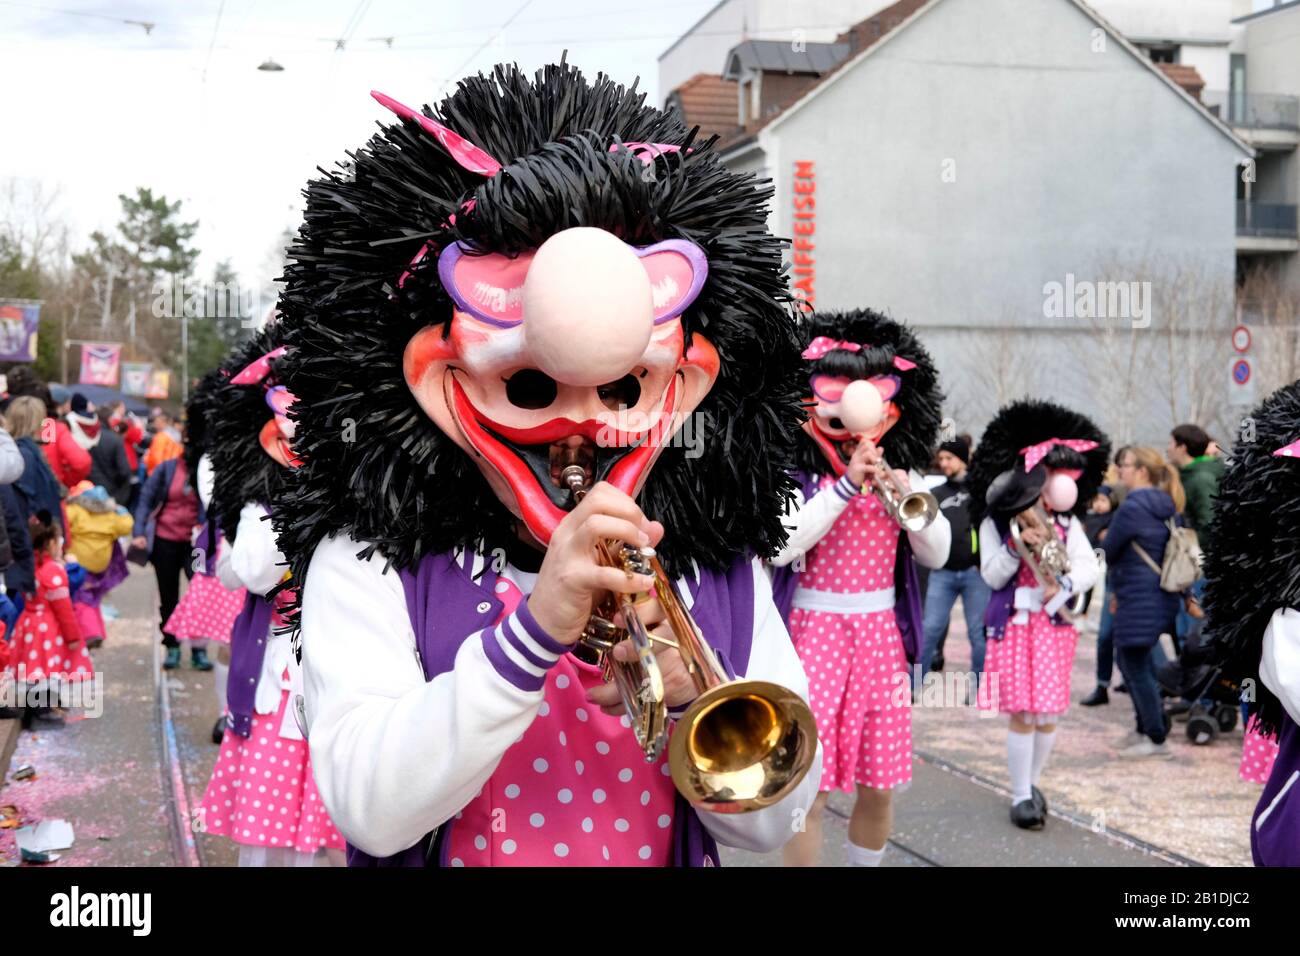 Un participant avec un masque facial, jouant à la trompette au carnaval d'Allschwil, Bâle landschaft, Suisse Banque D'Images